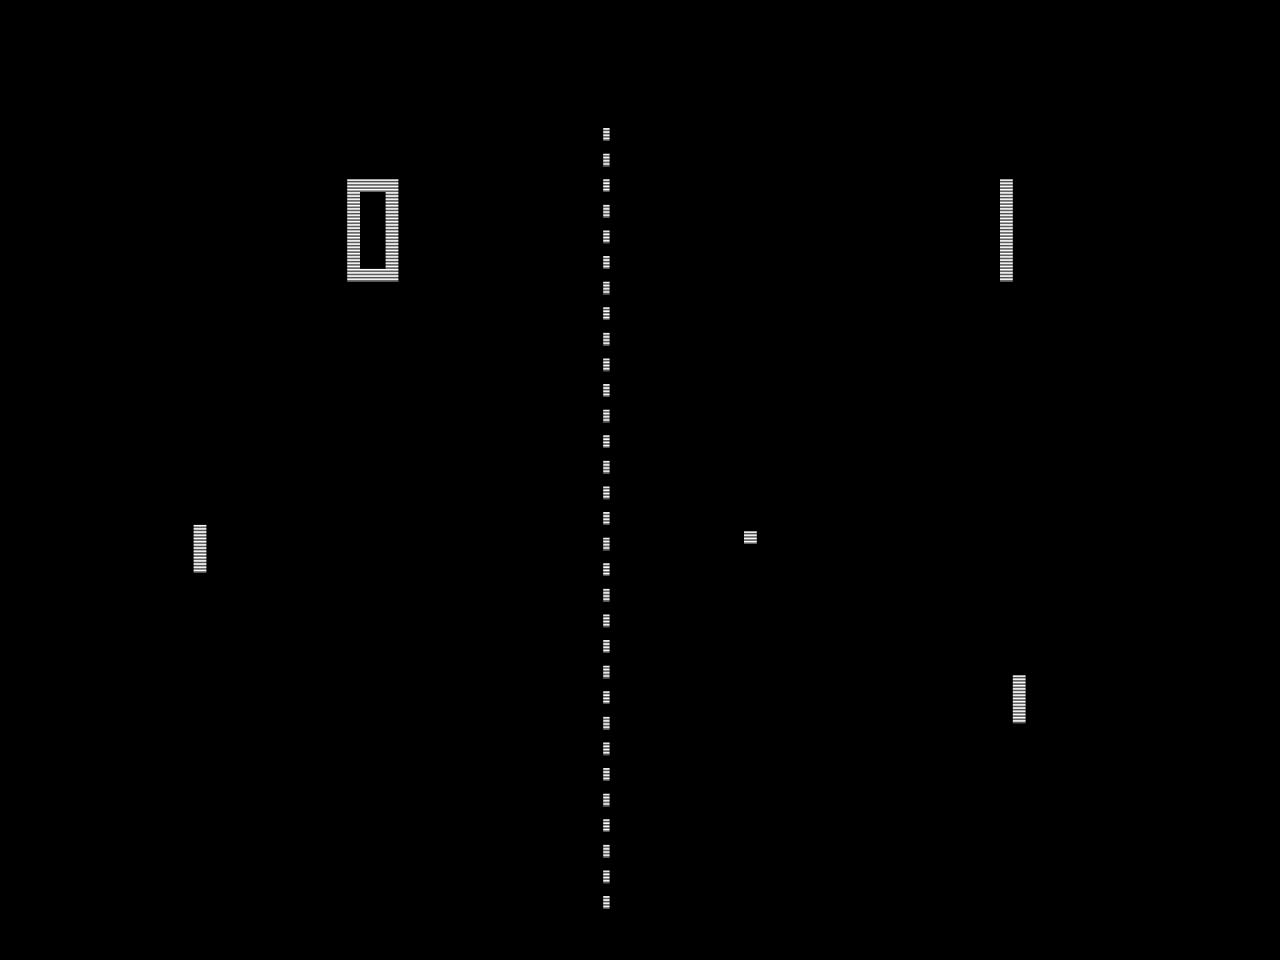 Pong - dieses Spiel wird uns auf ewig an die goldenen Atari-Zeiten erinnern (Screenshot)